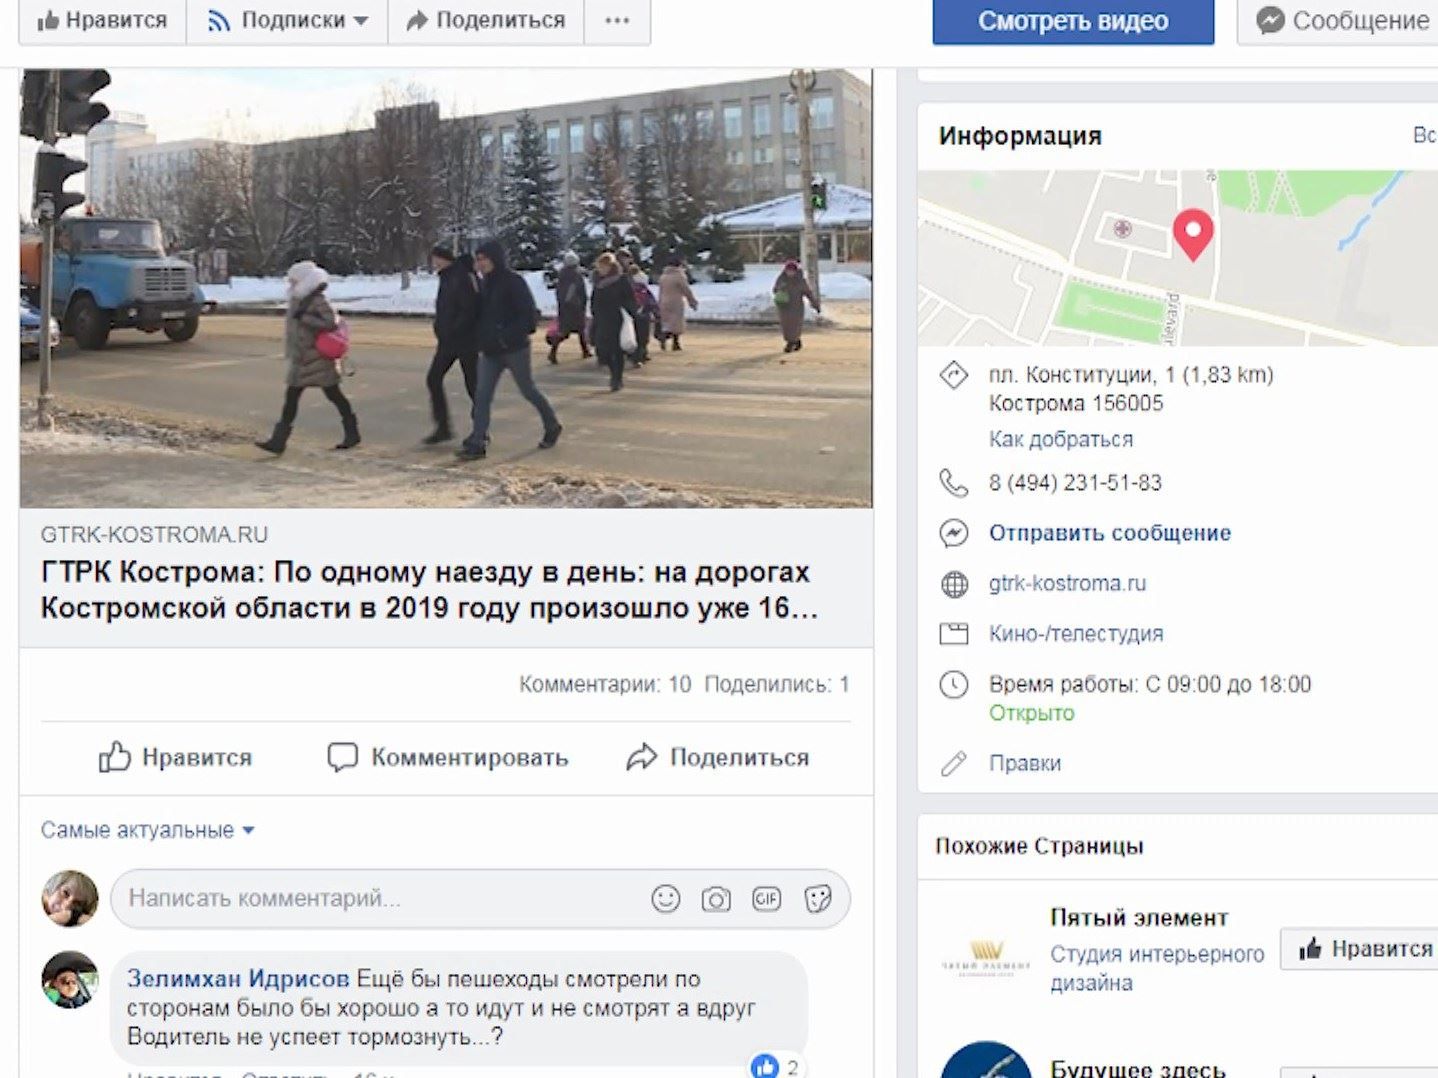 Сюжет ГТРК «Кострома» об автоавариях с участием пешеходов вызвал бурное обсуждение в соцсетях